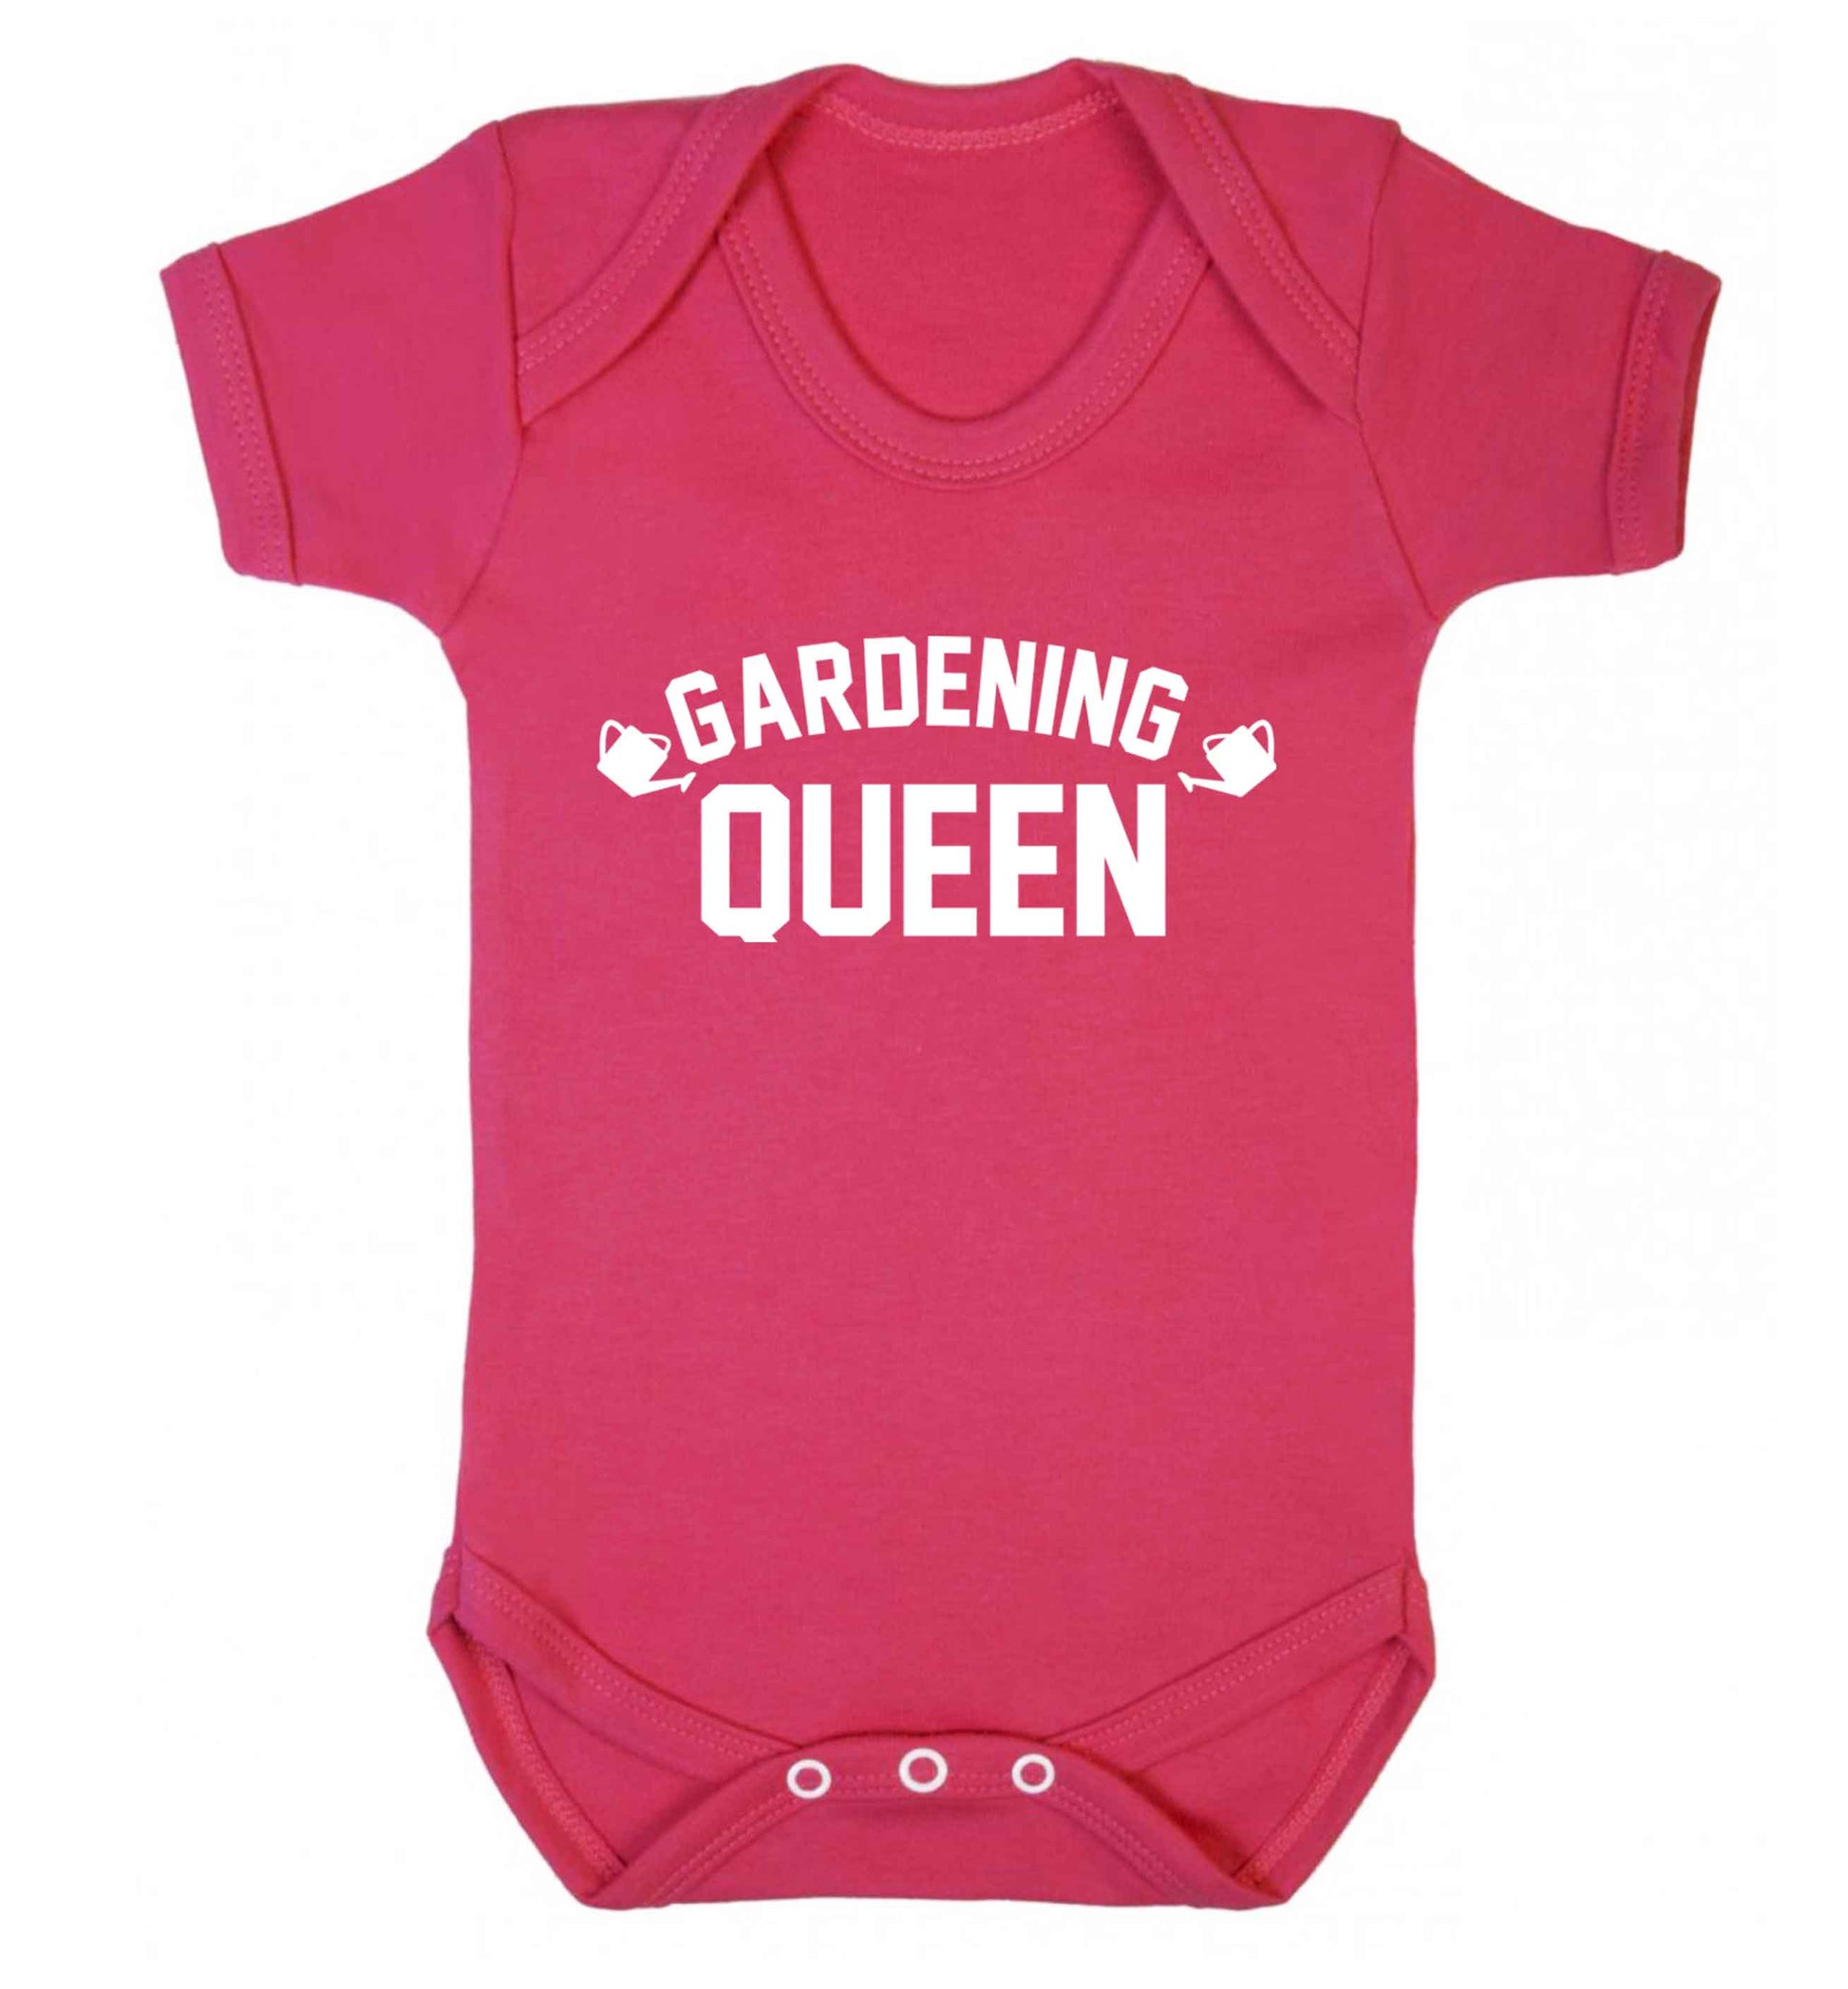 Gardening queen Baby Vest dark pink 18-24 months